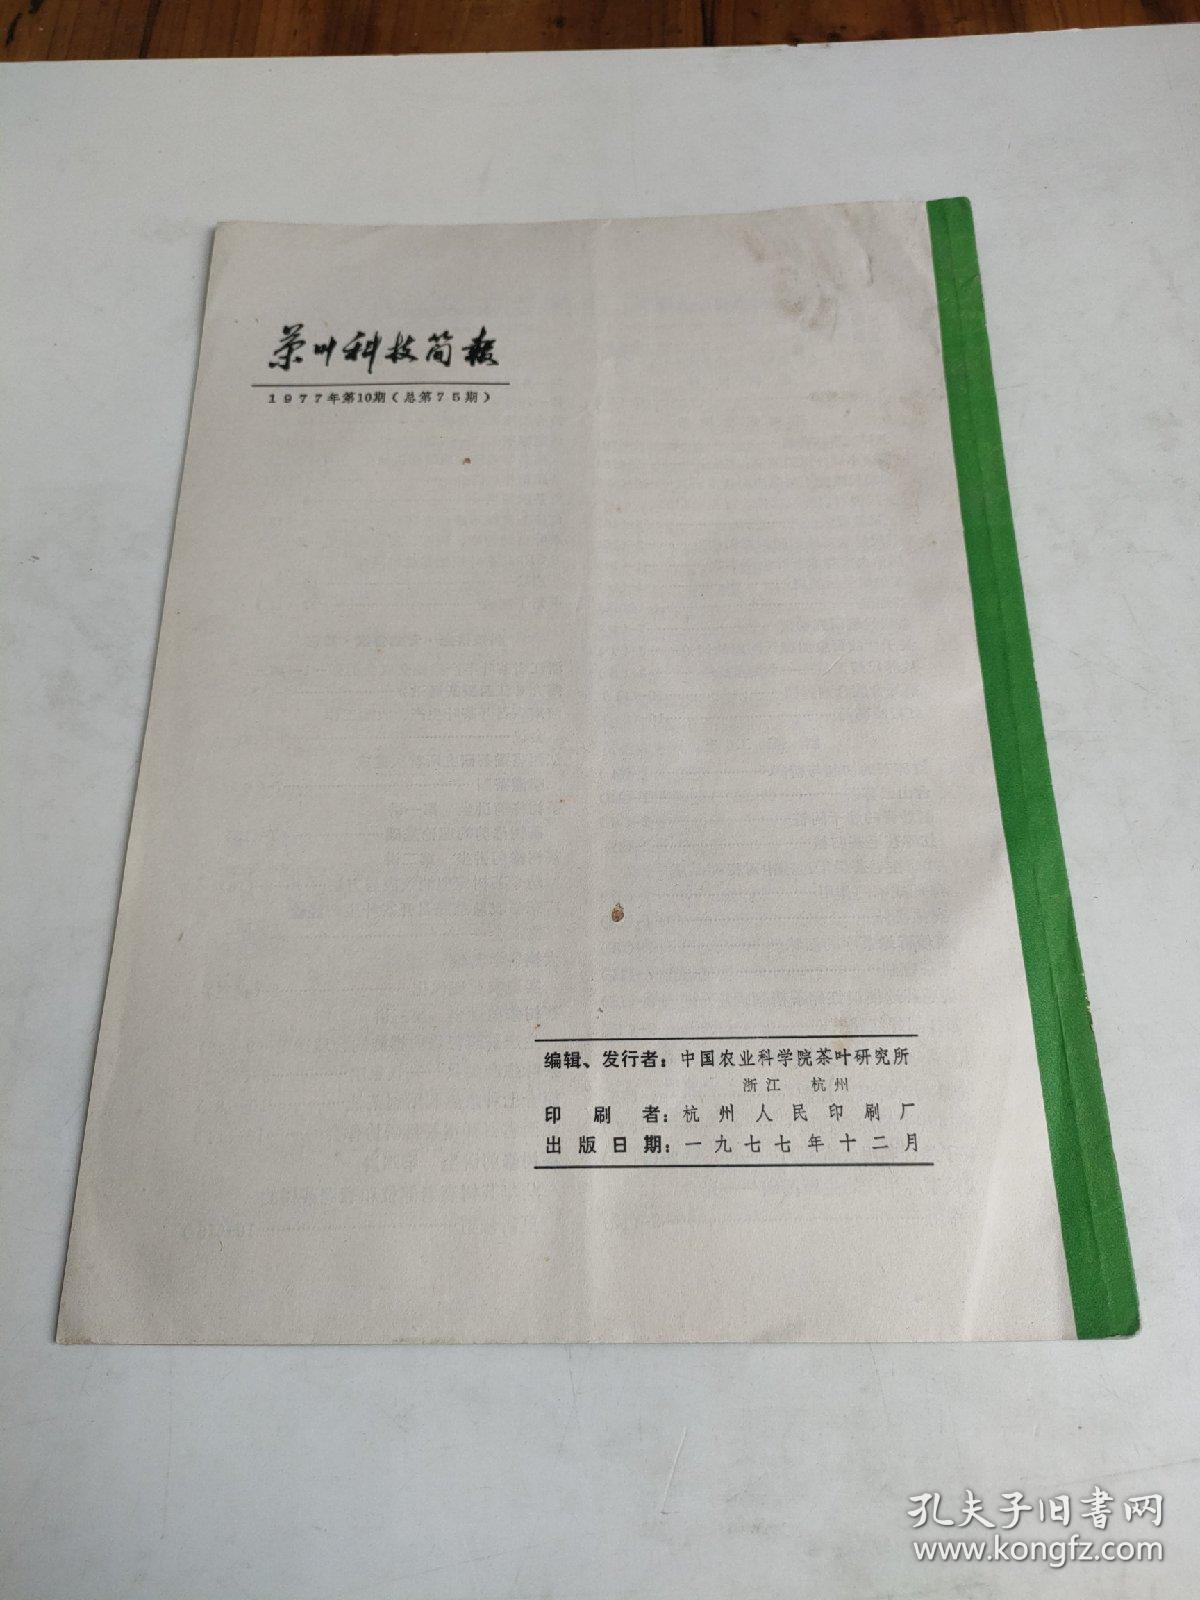 茶叶科技简报1977年第10期